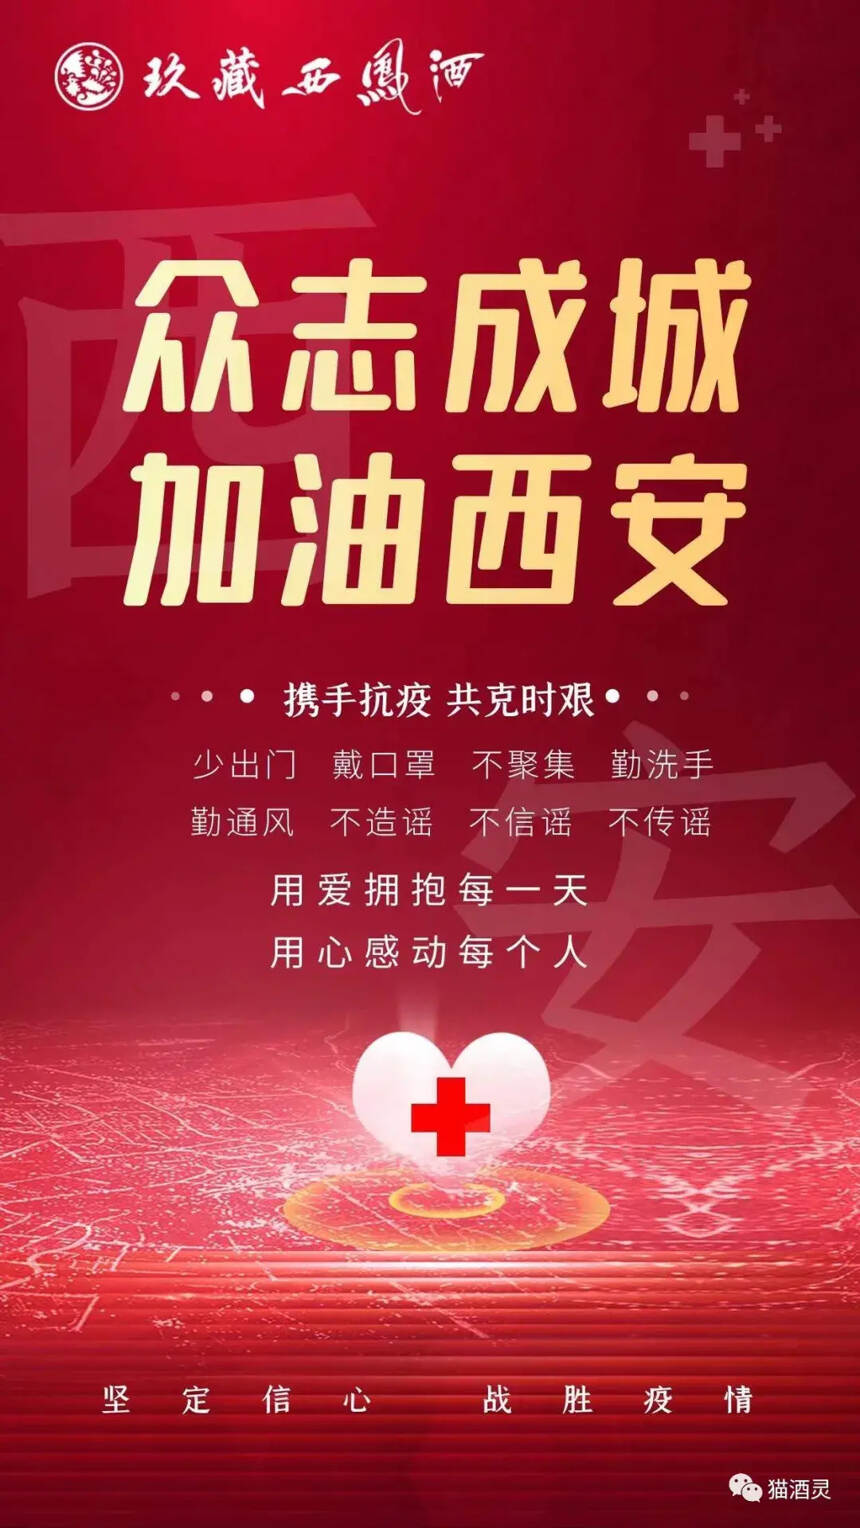 汇聚力量抗击疫情，玖藏西凤酒捐赠100万元抗疫物资